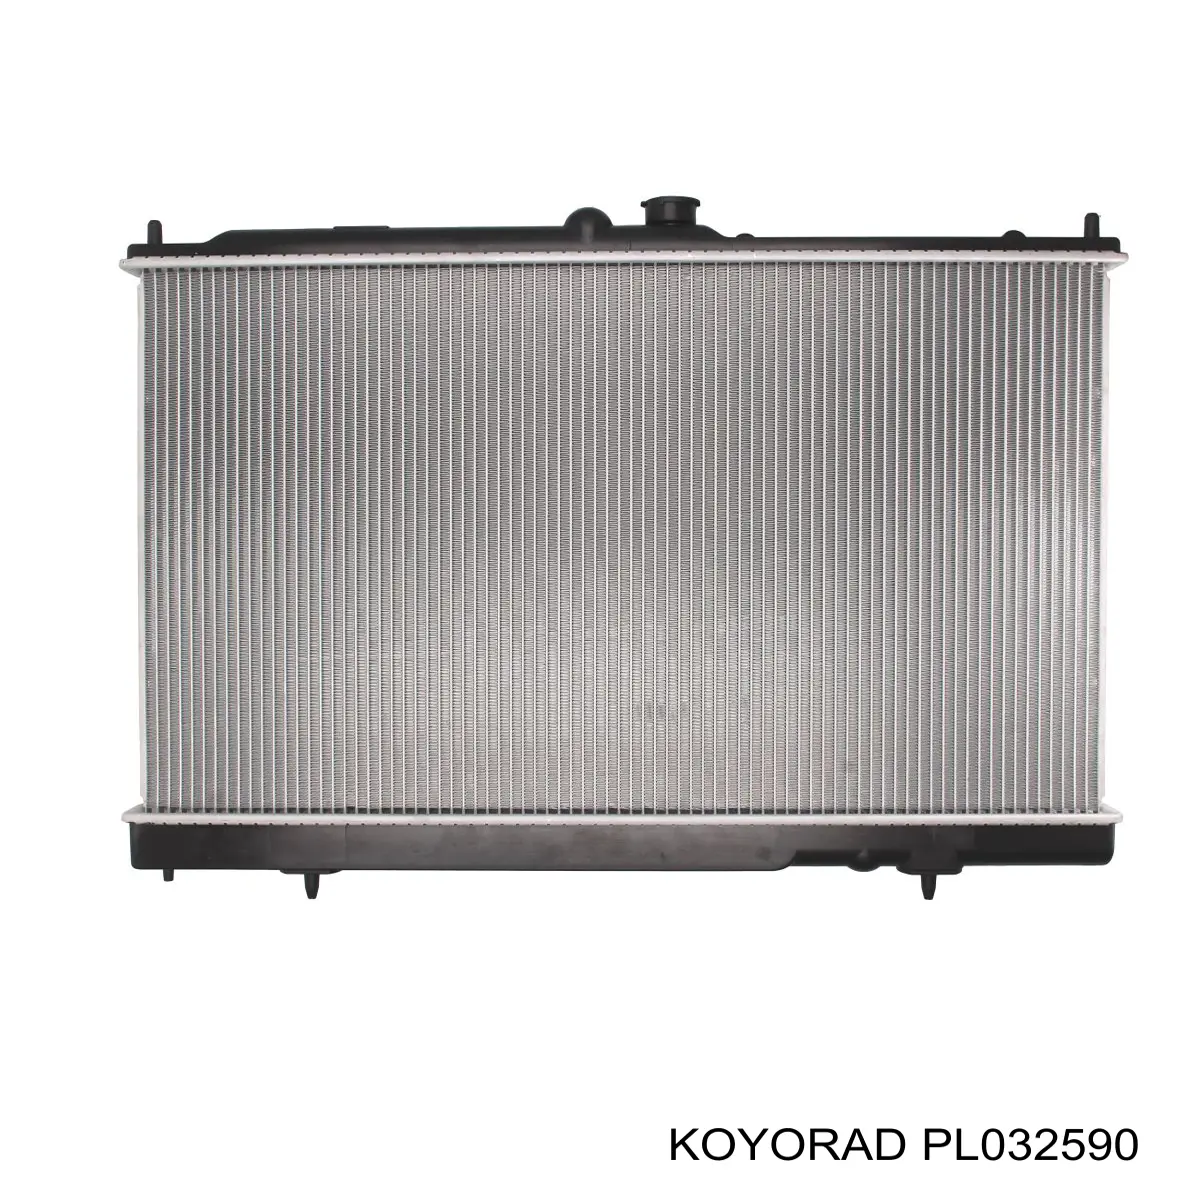 PL032590 Koyorad radiador